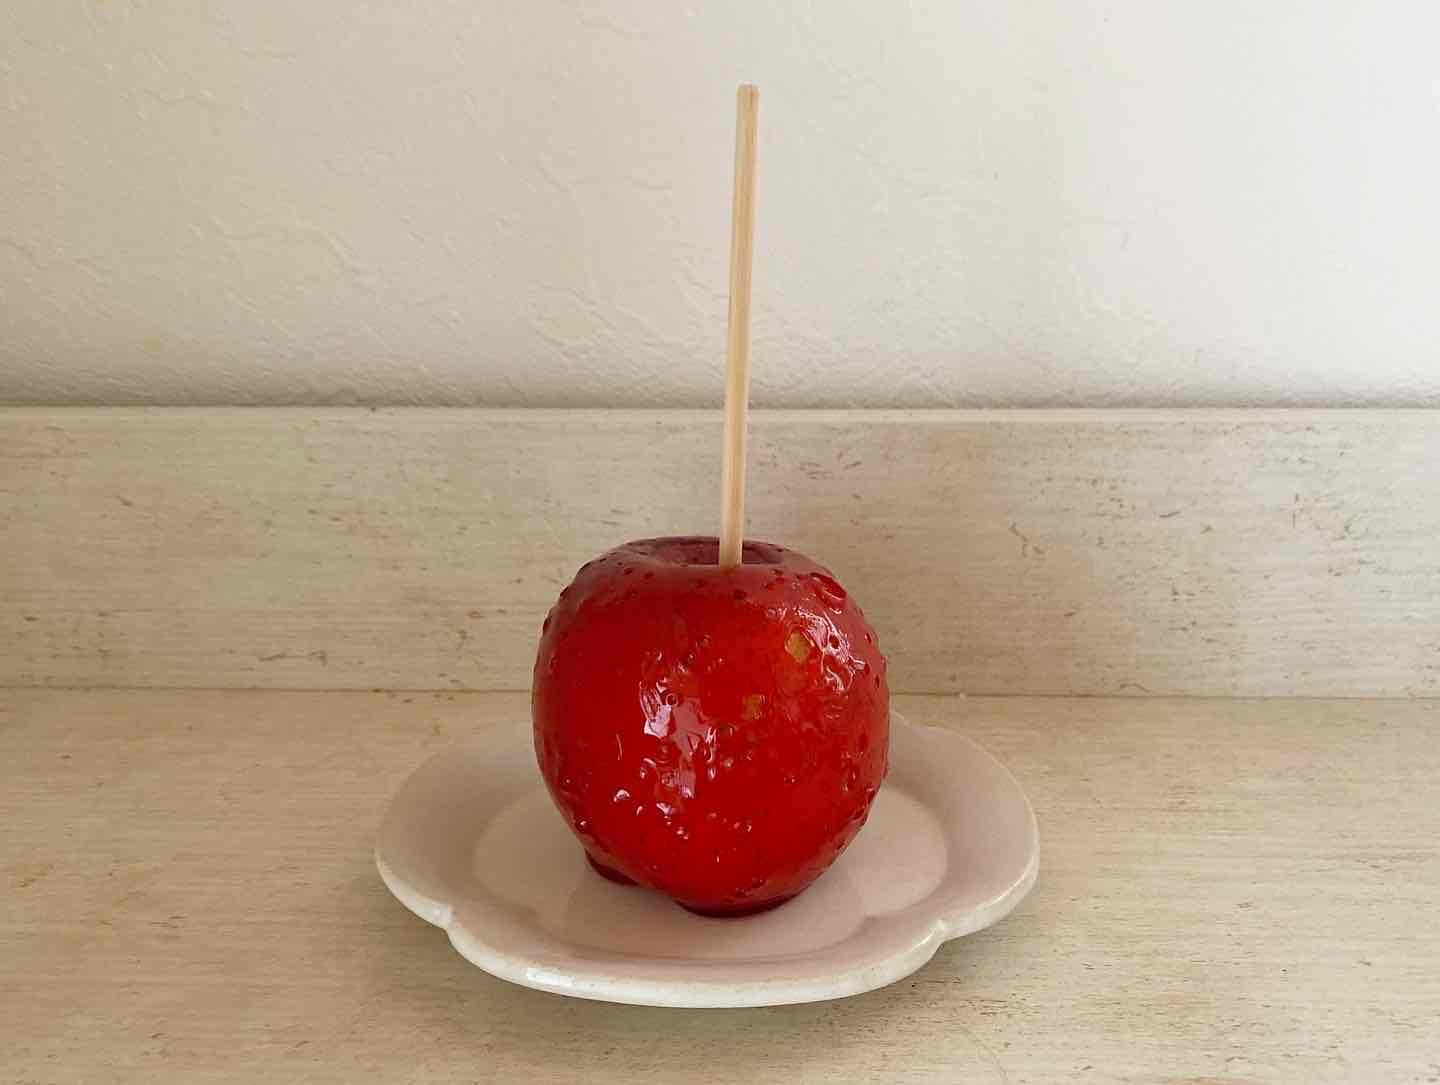 りんご自体の高さはおよそ8.5cm